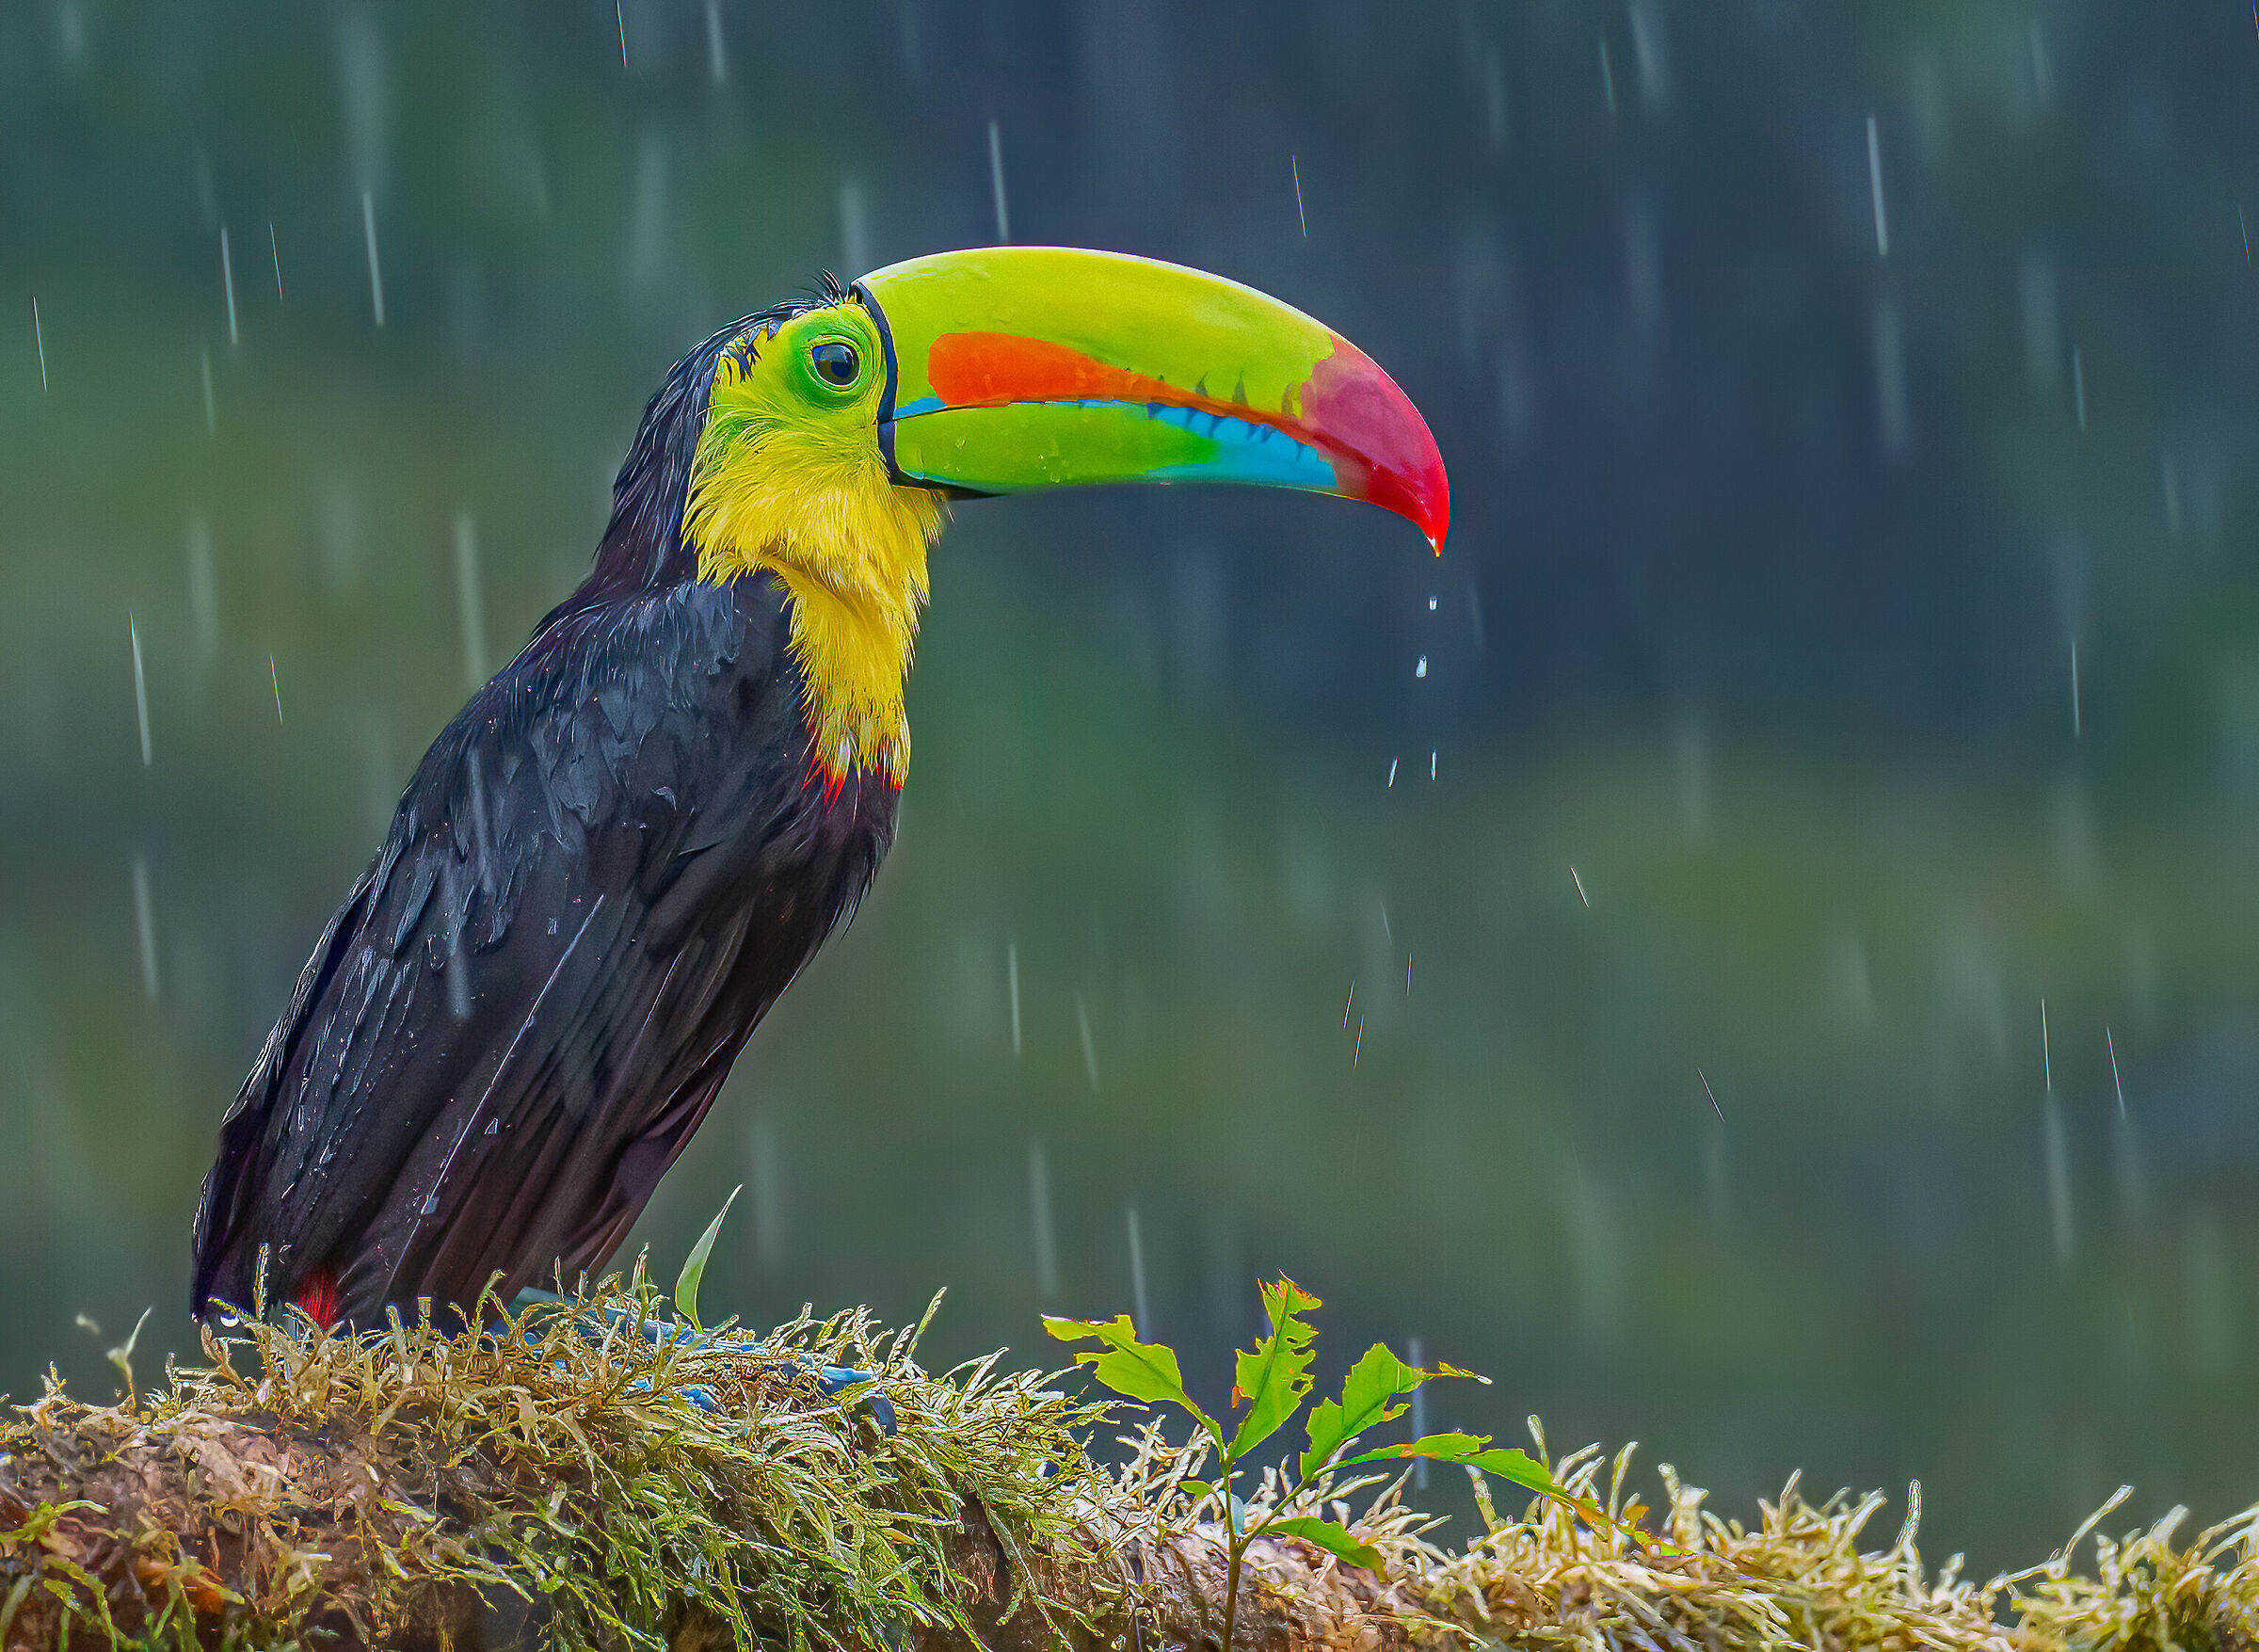 Toucan in the rain...